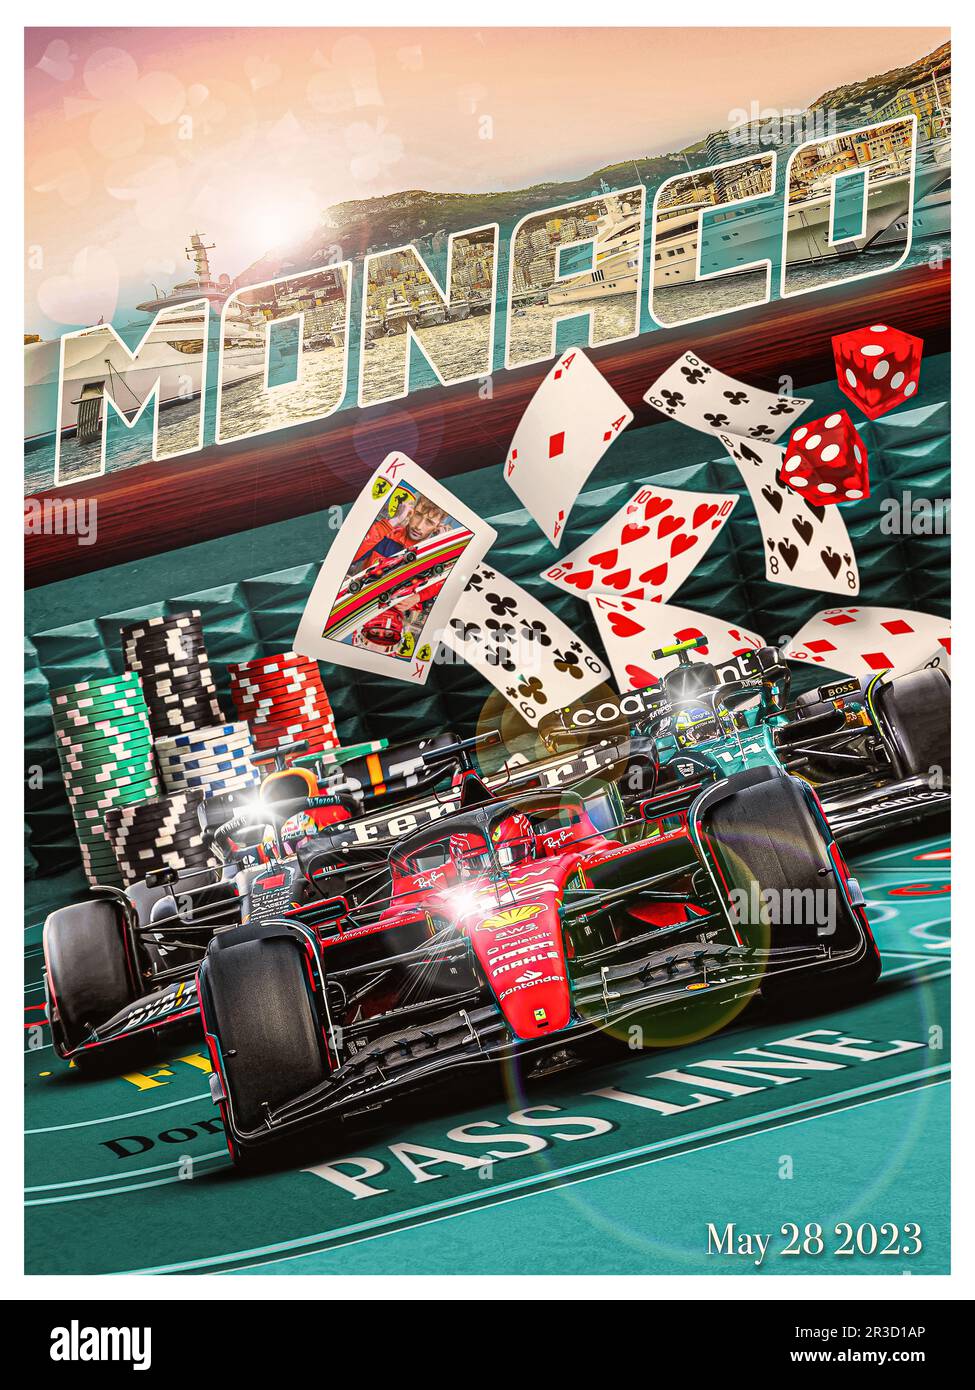 Affiche F1 Grand Prix de Monaco 1994